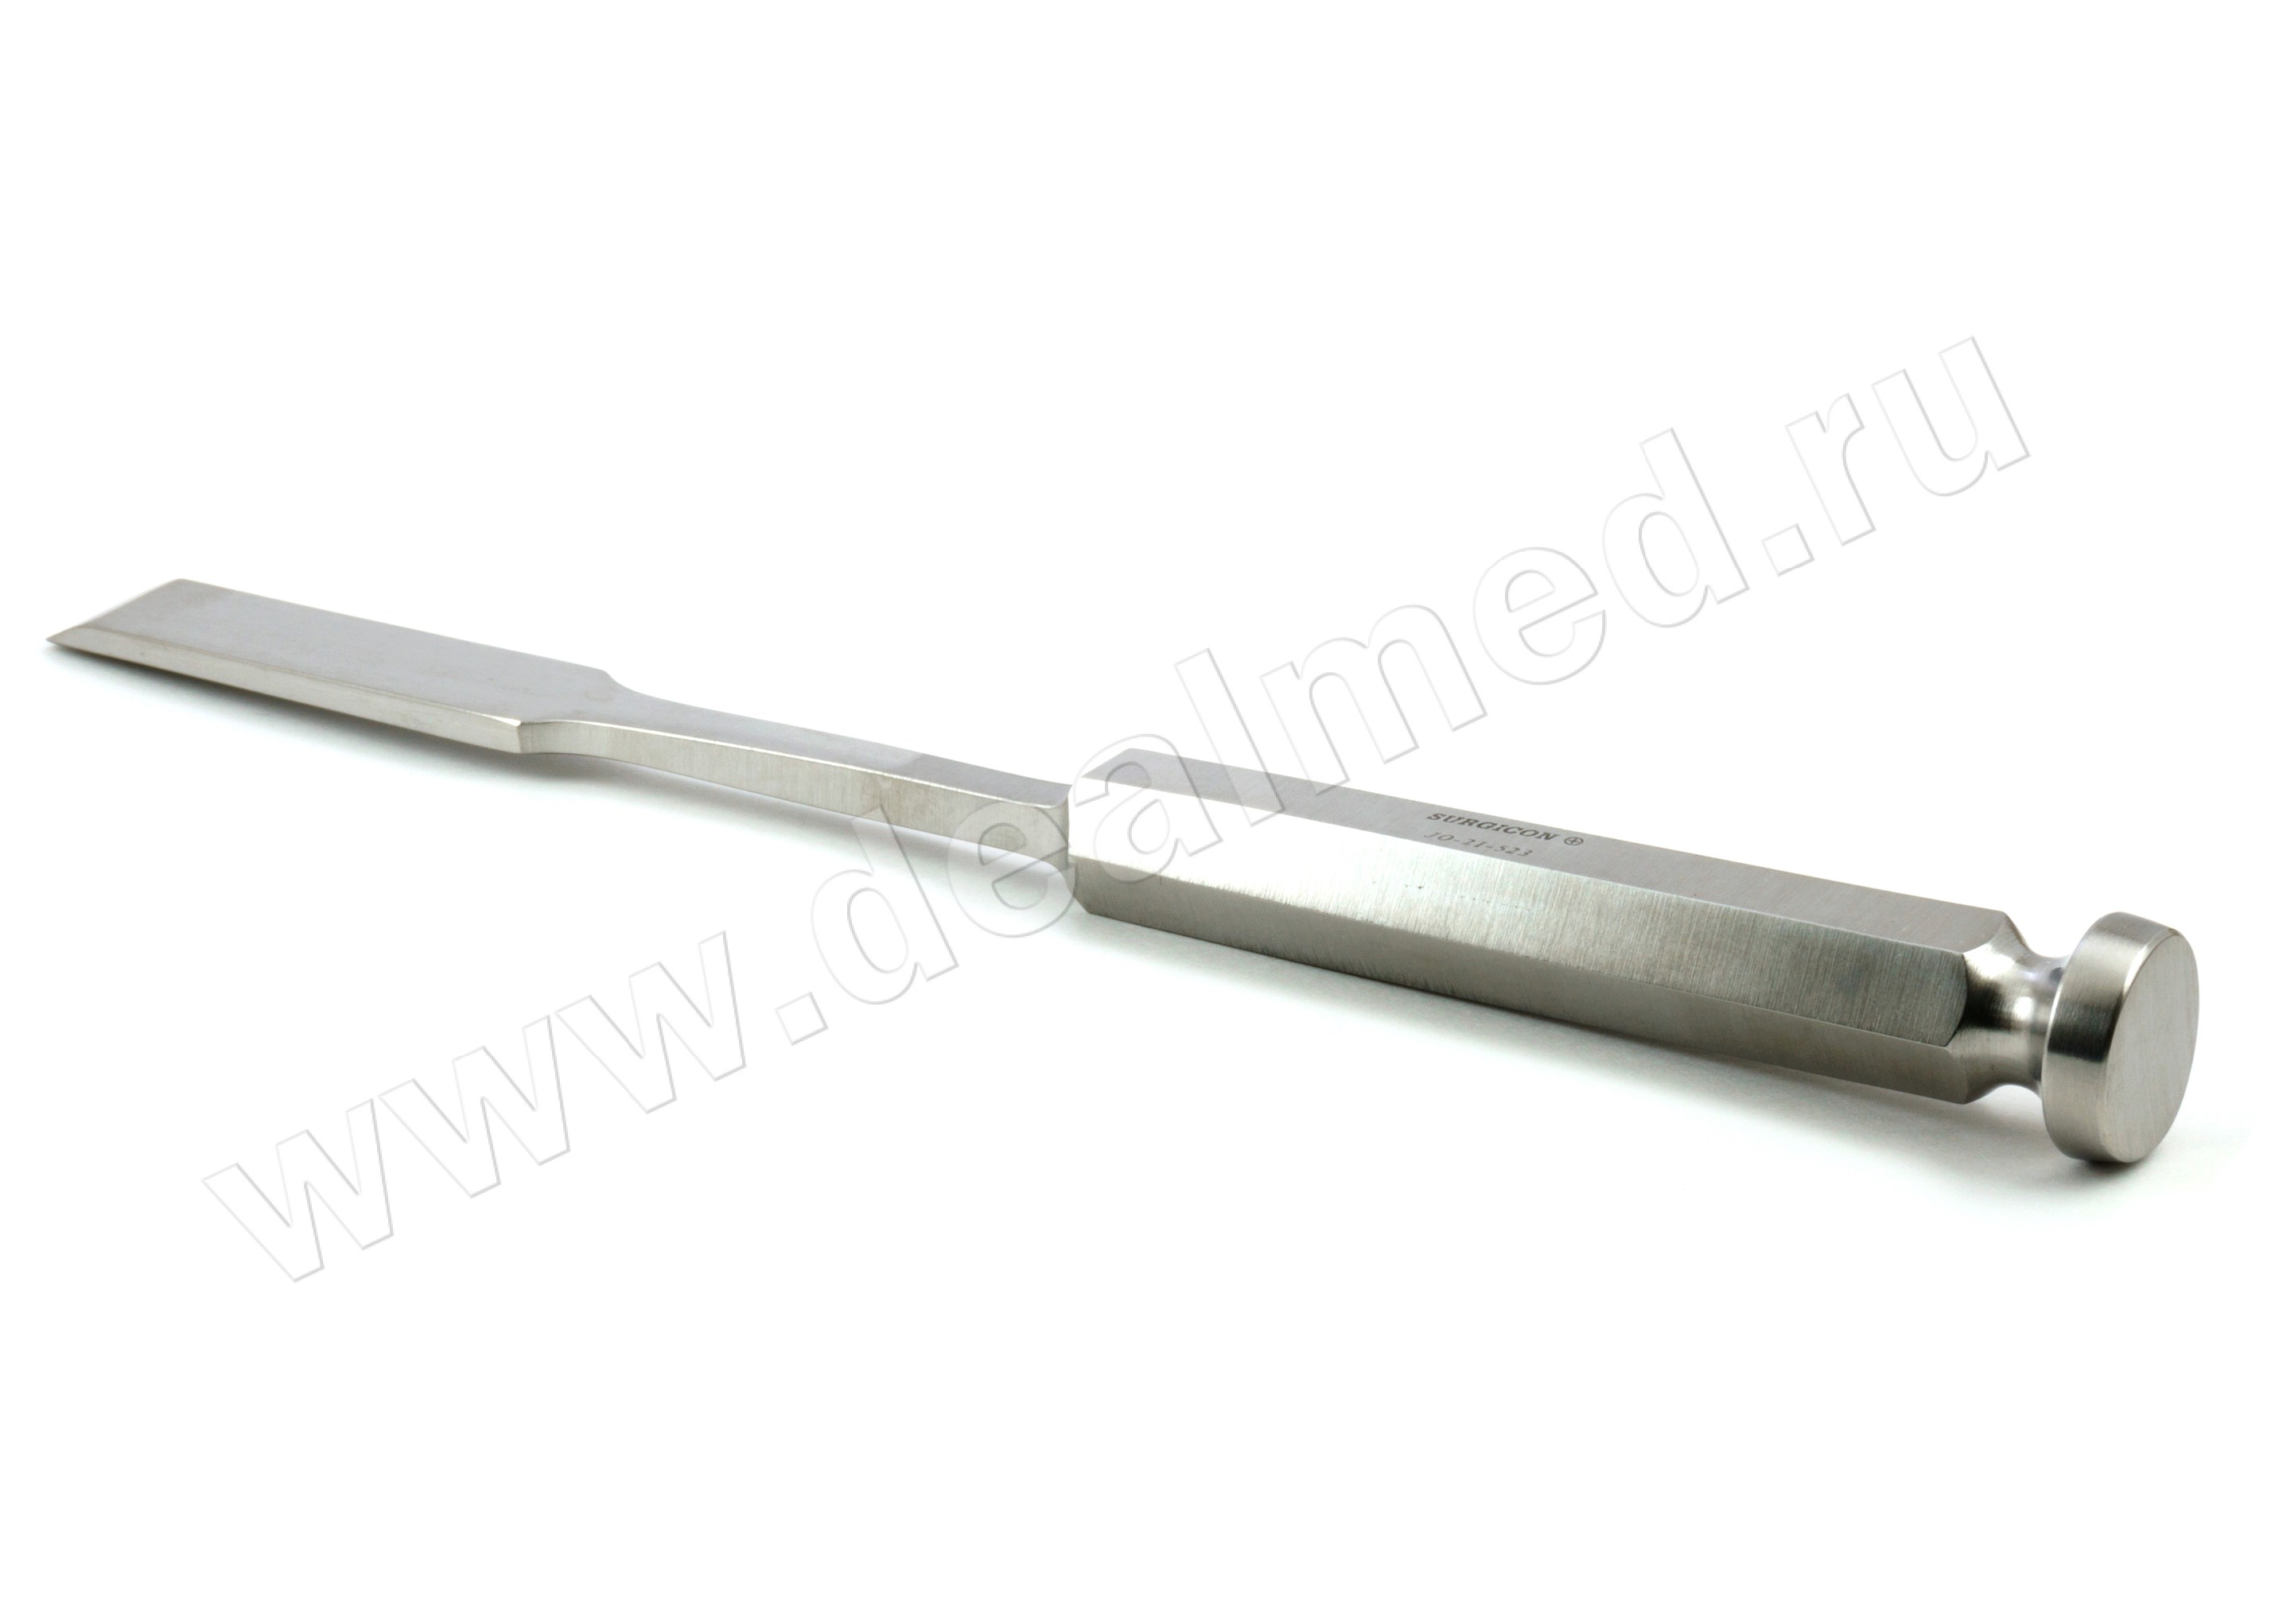 Долото с шестигранной ручкой плоское с 2х сторонней заточкой 10 мм (арт. JO-21-530) Surgicon, Пакистан